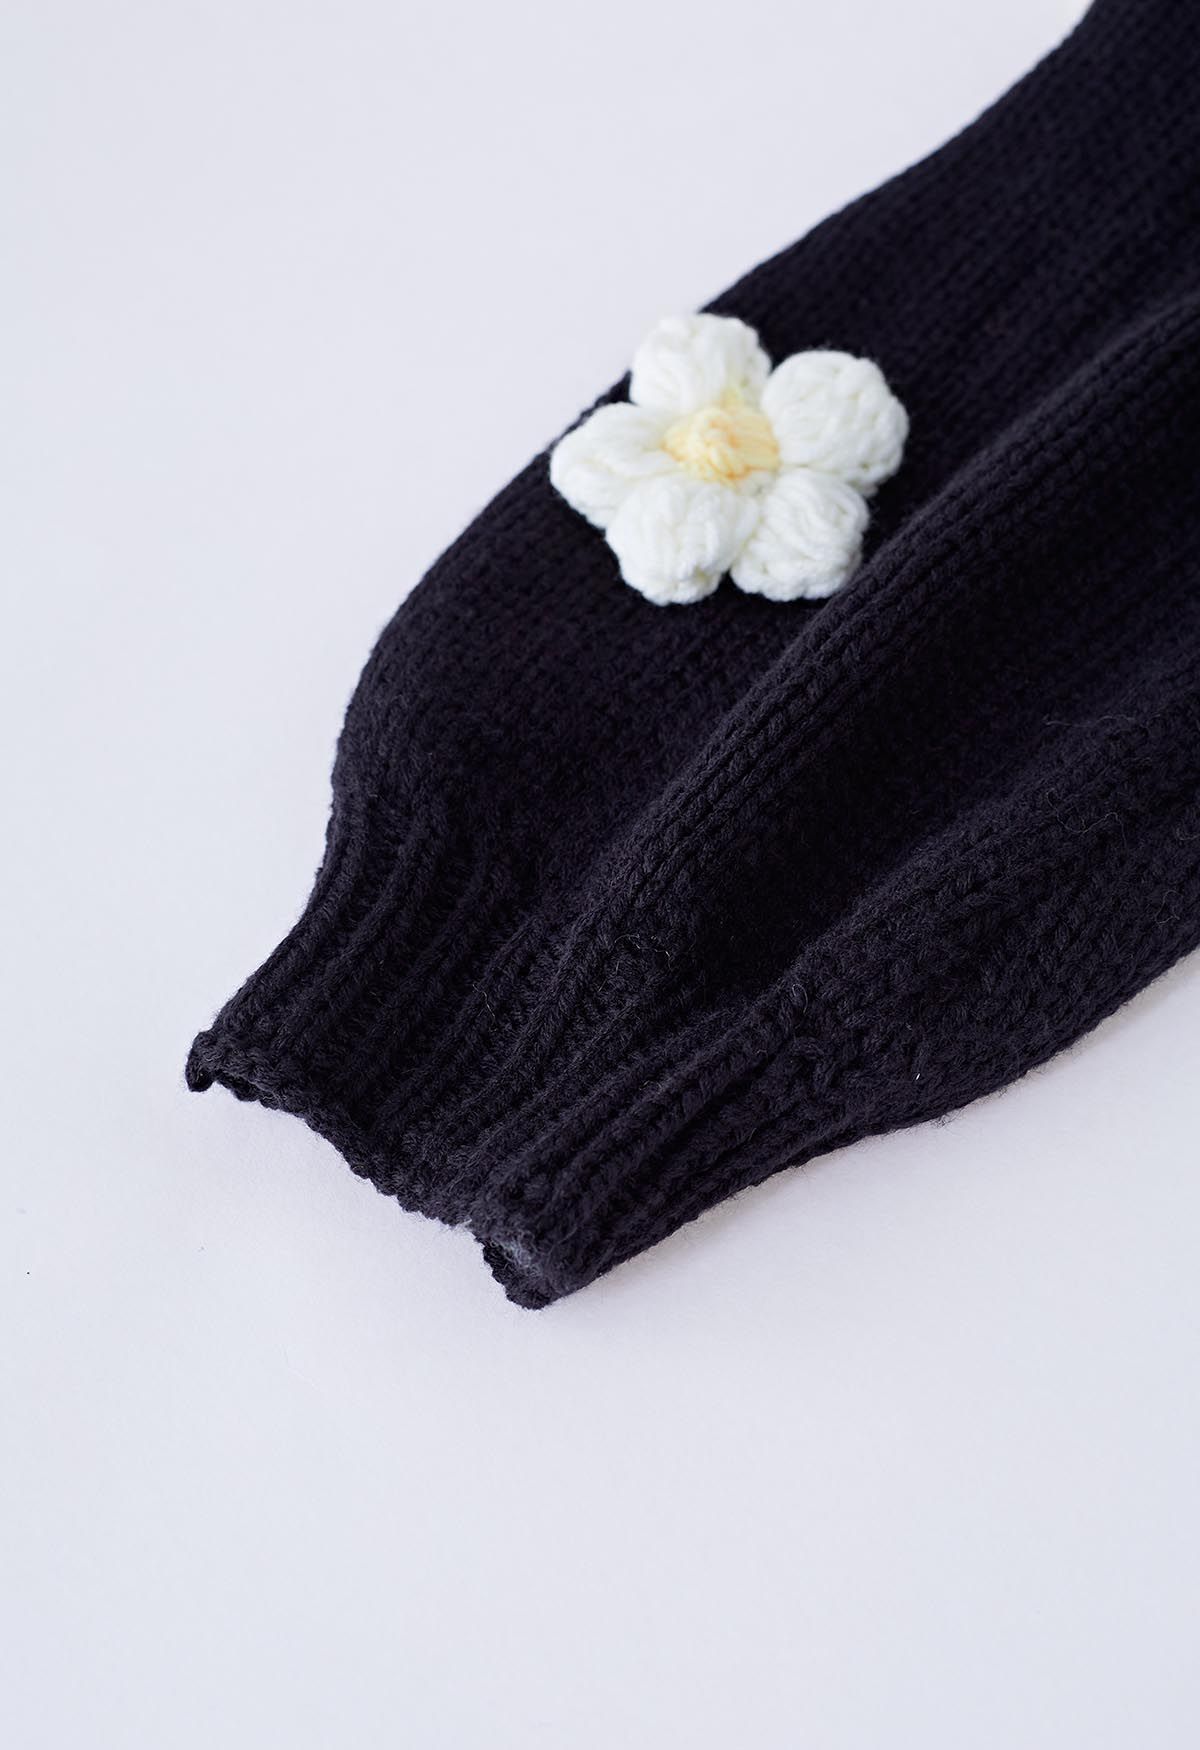 Cardigan en tricot ouvert sur le devant à fleurs en point 3D en noir